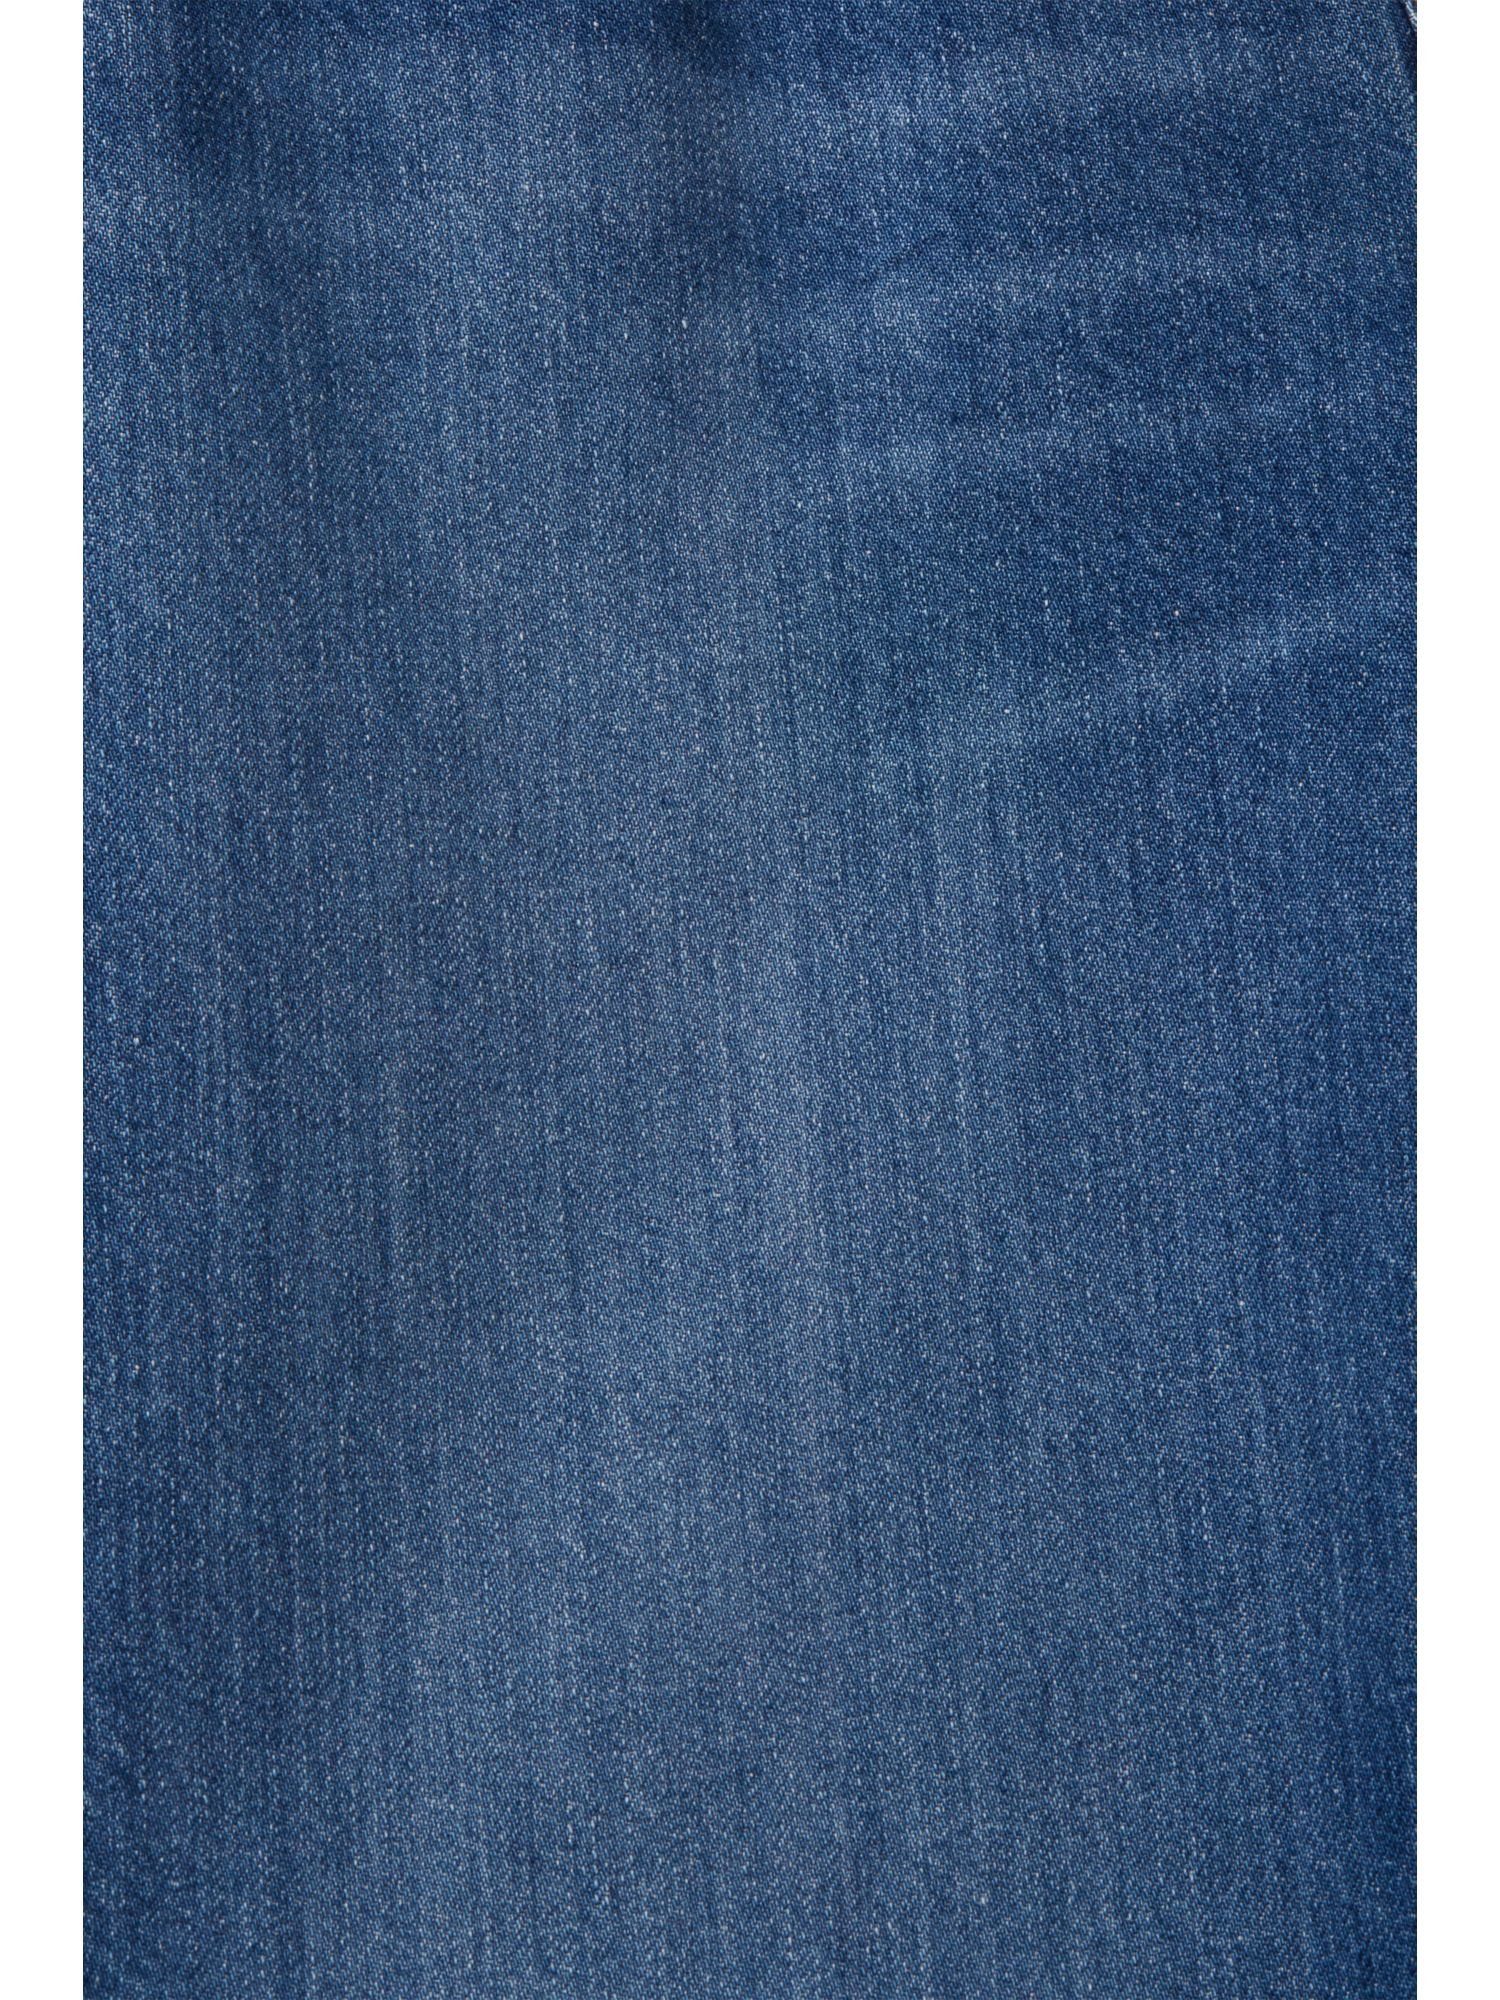 WASHED BLUE mit Bund MEDIUM Passform hohem Jeans und Esprit 7/8-Jeans gerader